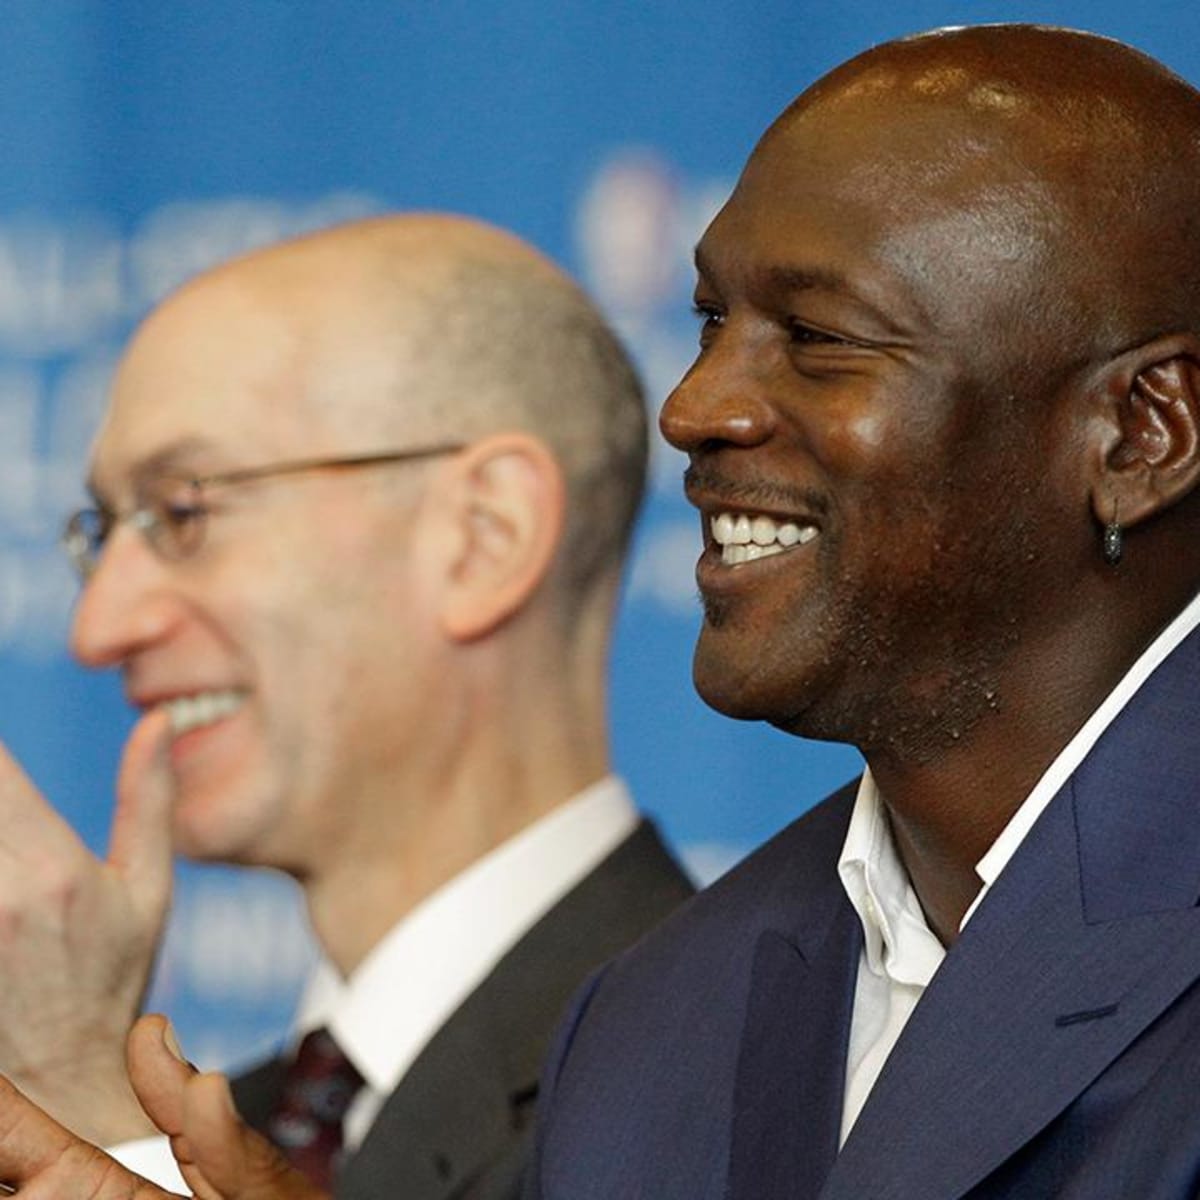 Jordan, Silver may try to mediate Knicks-Oakley dispute - Sports Illustrated